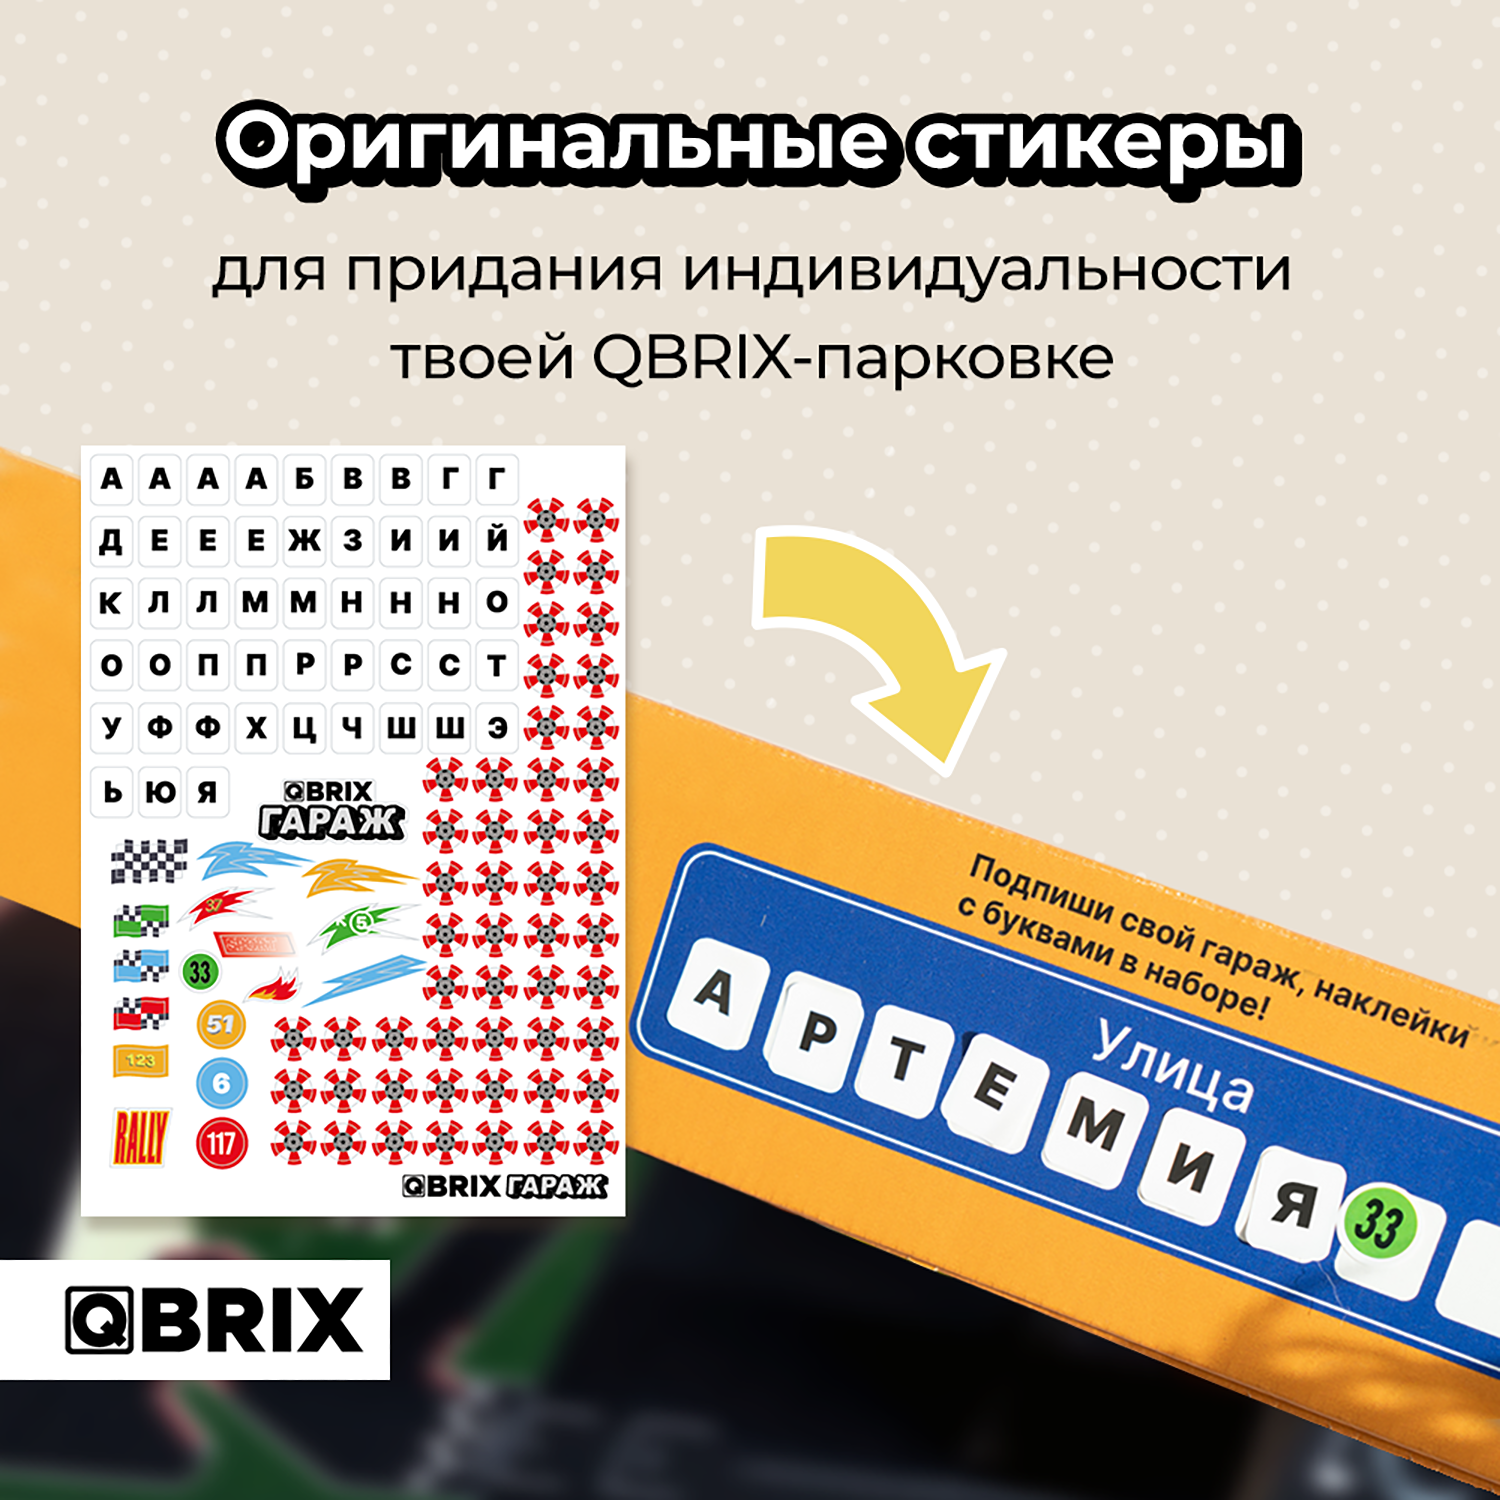 Гараж QBRIX картонный на 21 место Г102 Г102 - фото 4